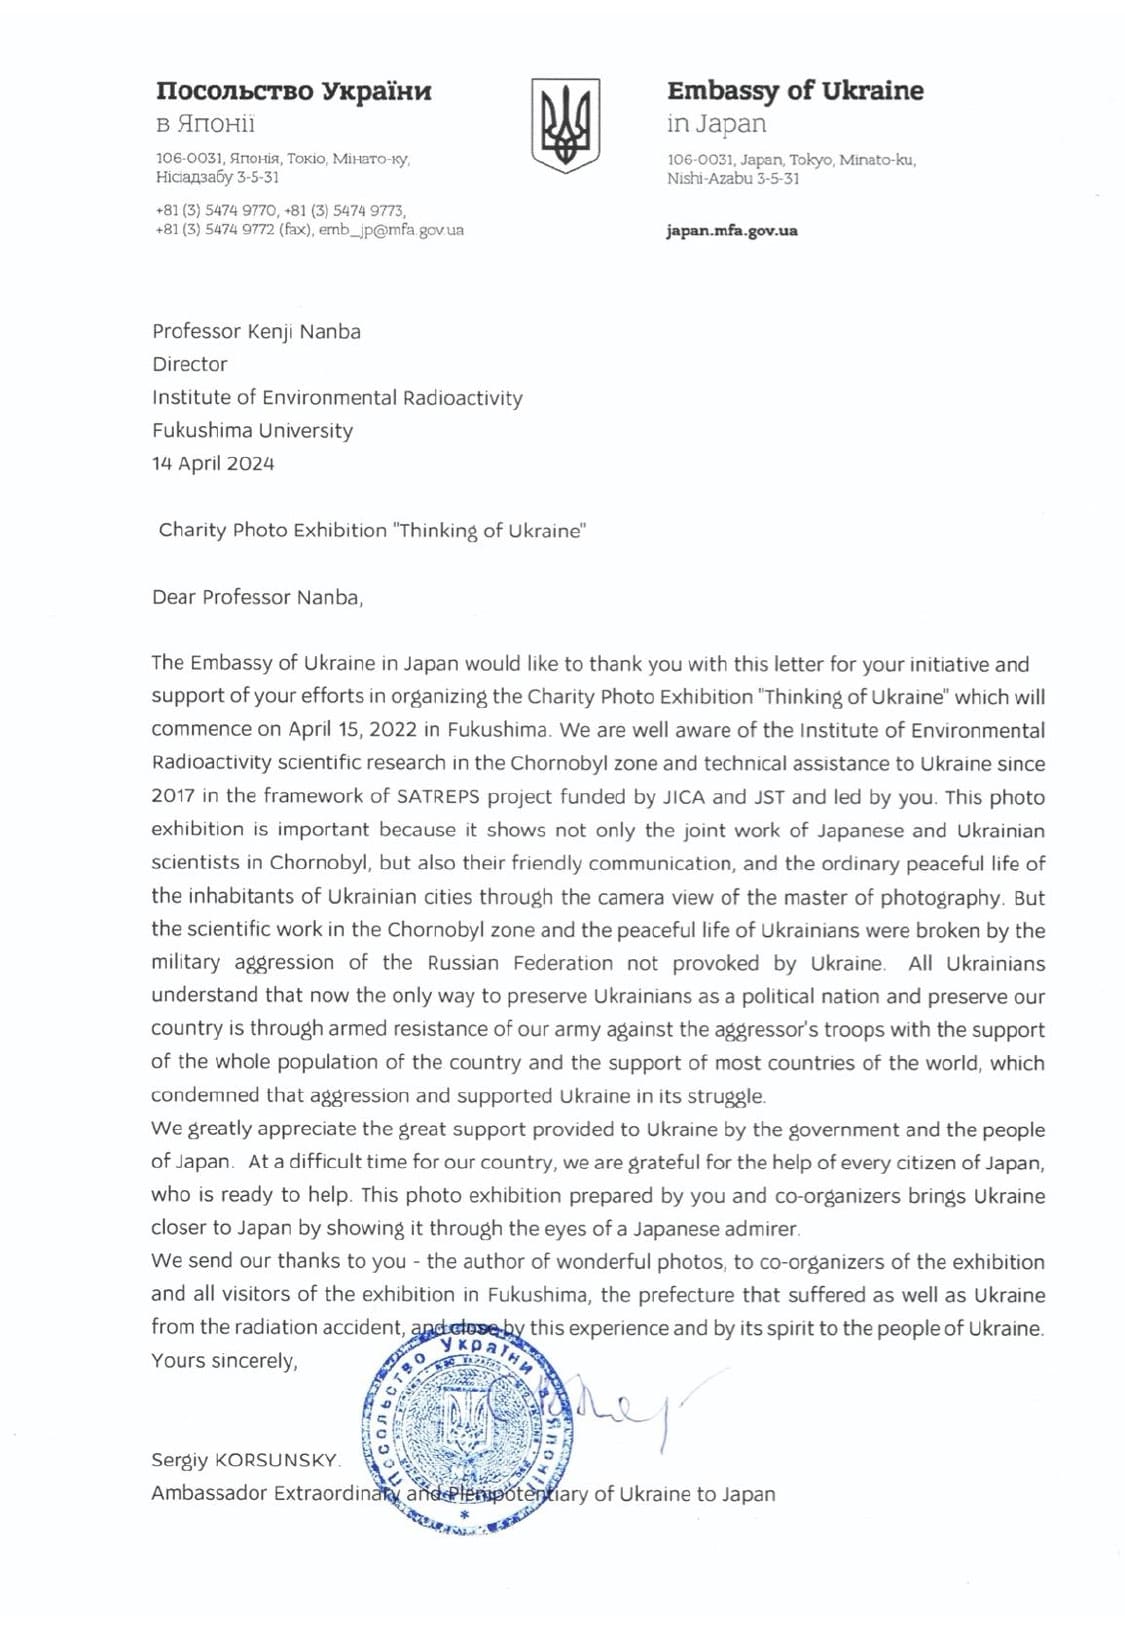 コルスンスキー大使から難波所長への手紙